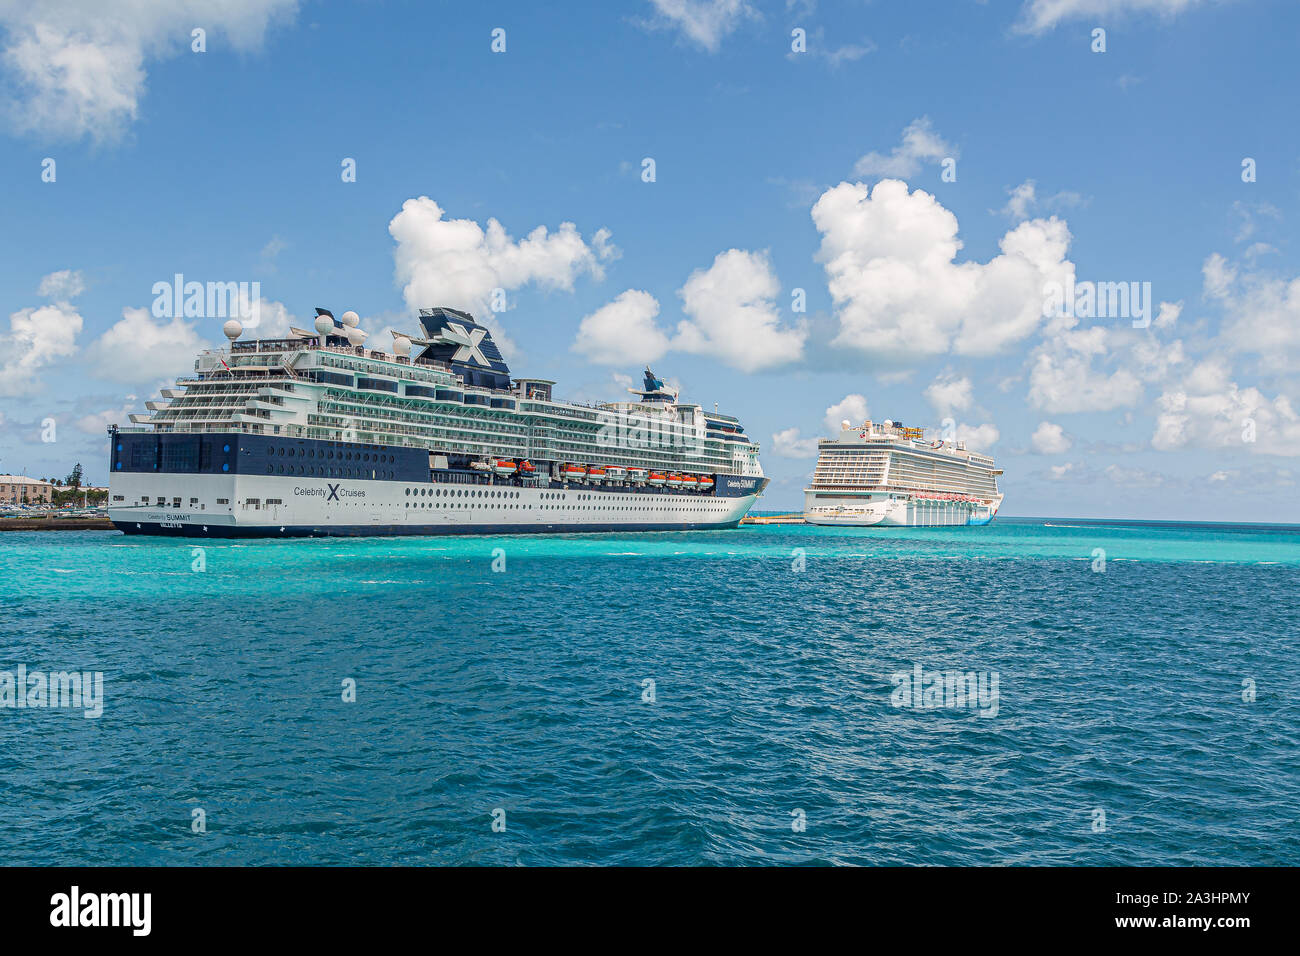 HAMILTON, Bermuda - 12. Juli 2017: Bermuda hat eine Mischung aus Britischen  und Amerikanischen Kultur, die in der Hauptstadt gefunden werden kann,  Hamilton. Die Royal Naval D Stockfotografie - Alamy